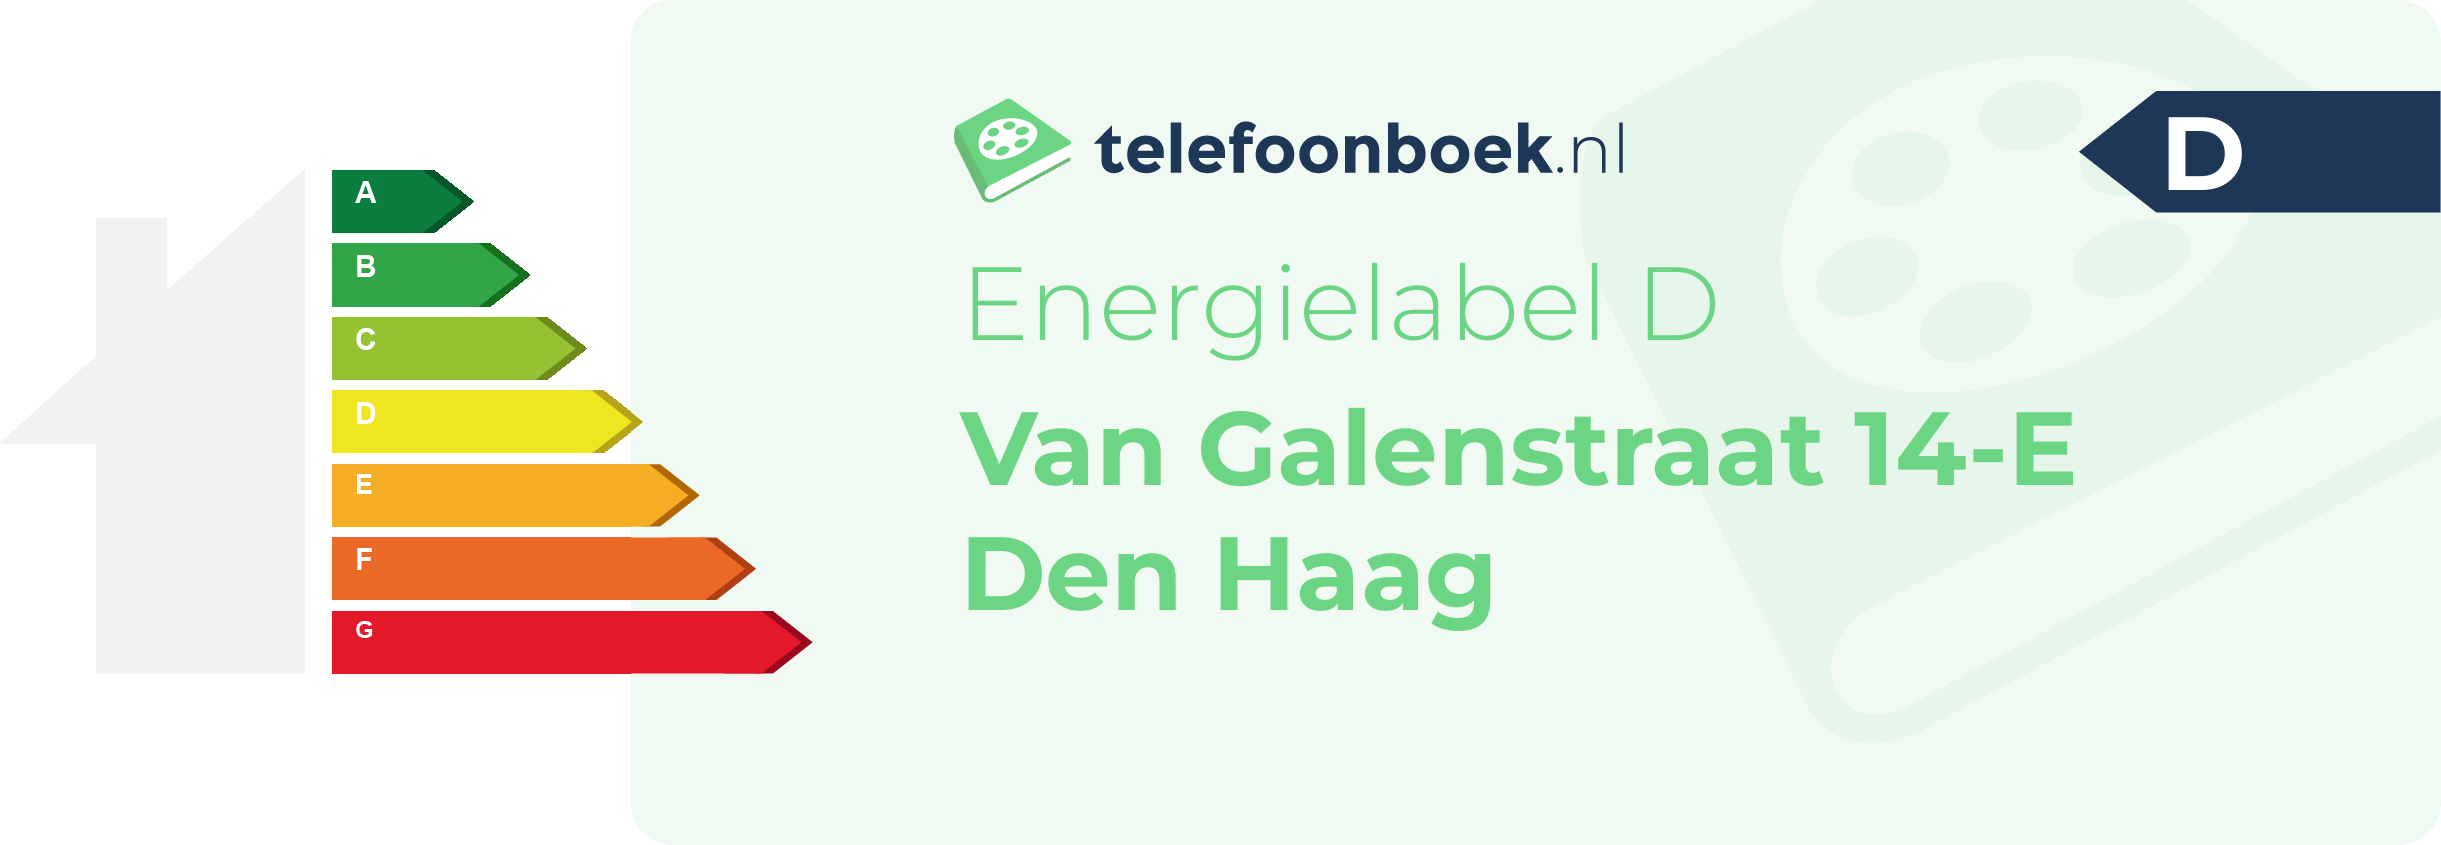 Energielabel Van Galenstraat 14-E Den Haag